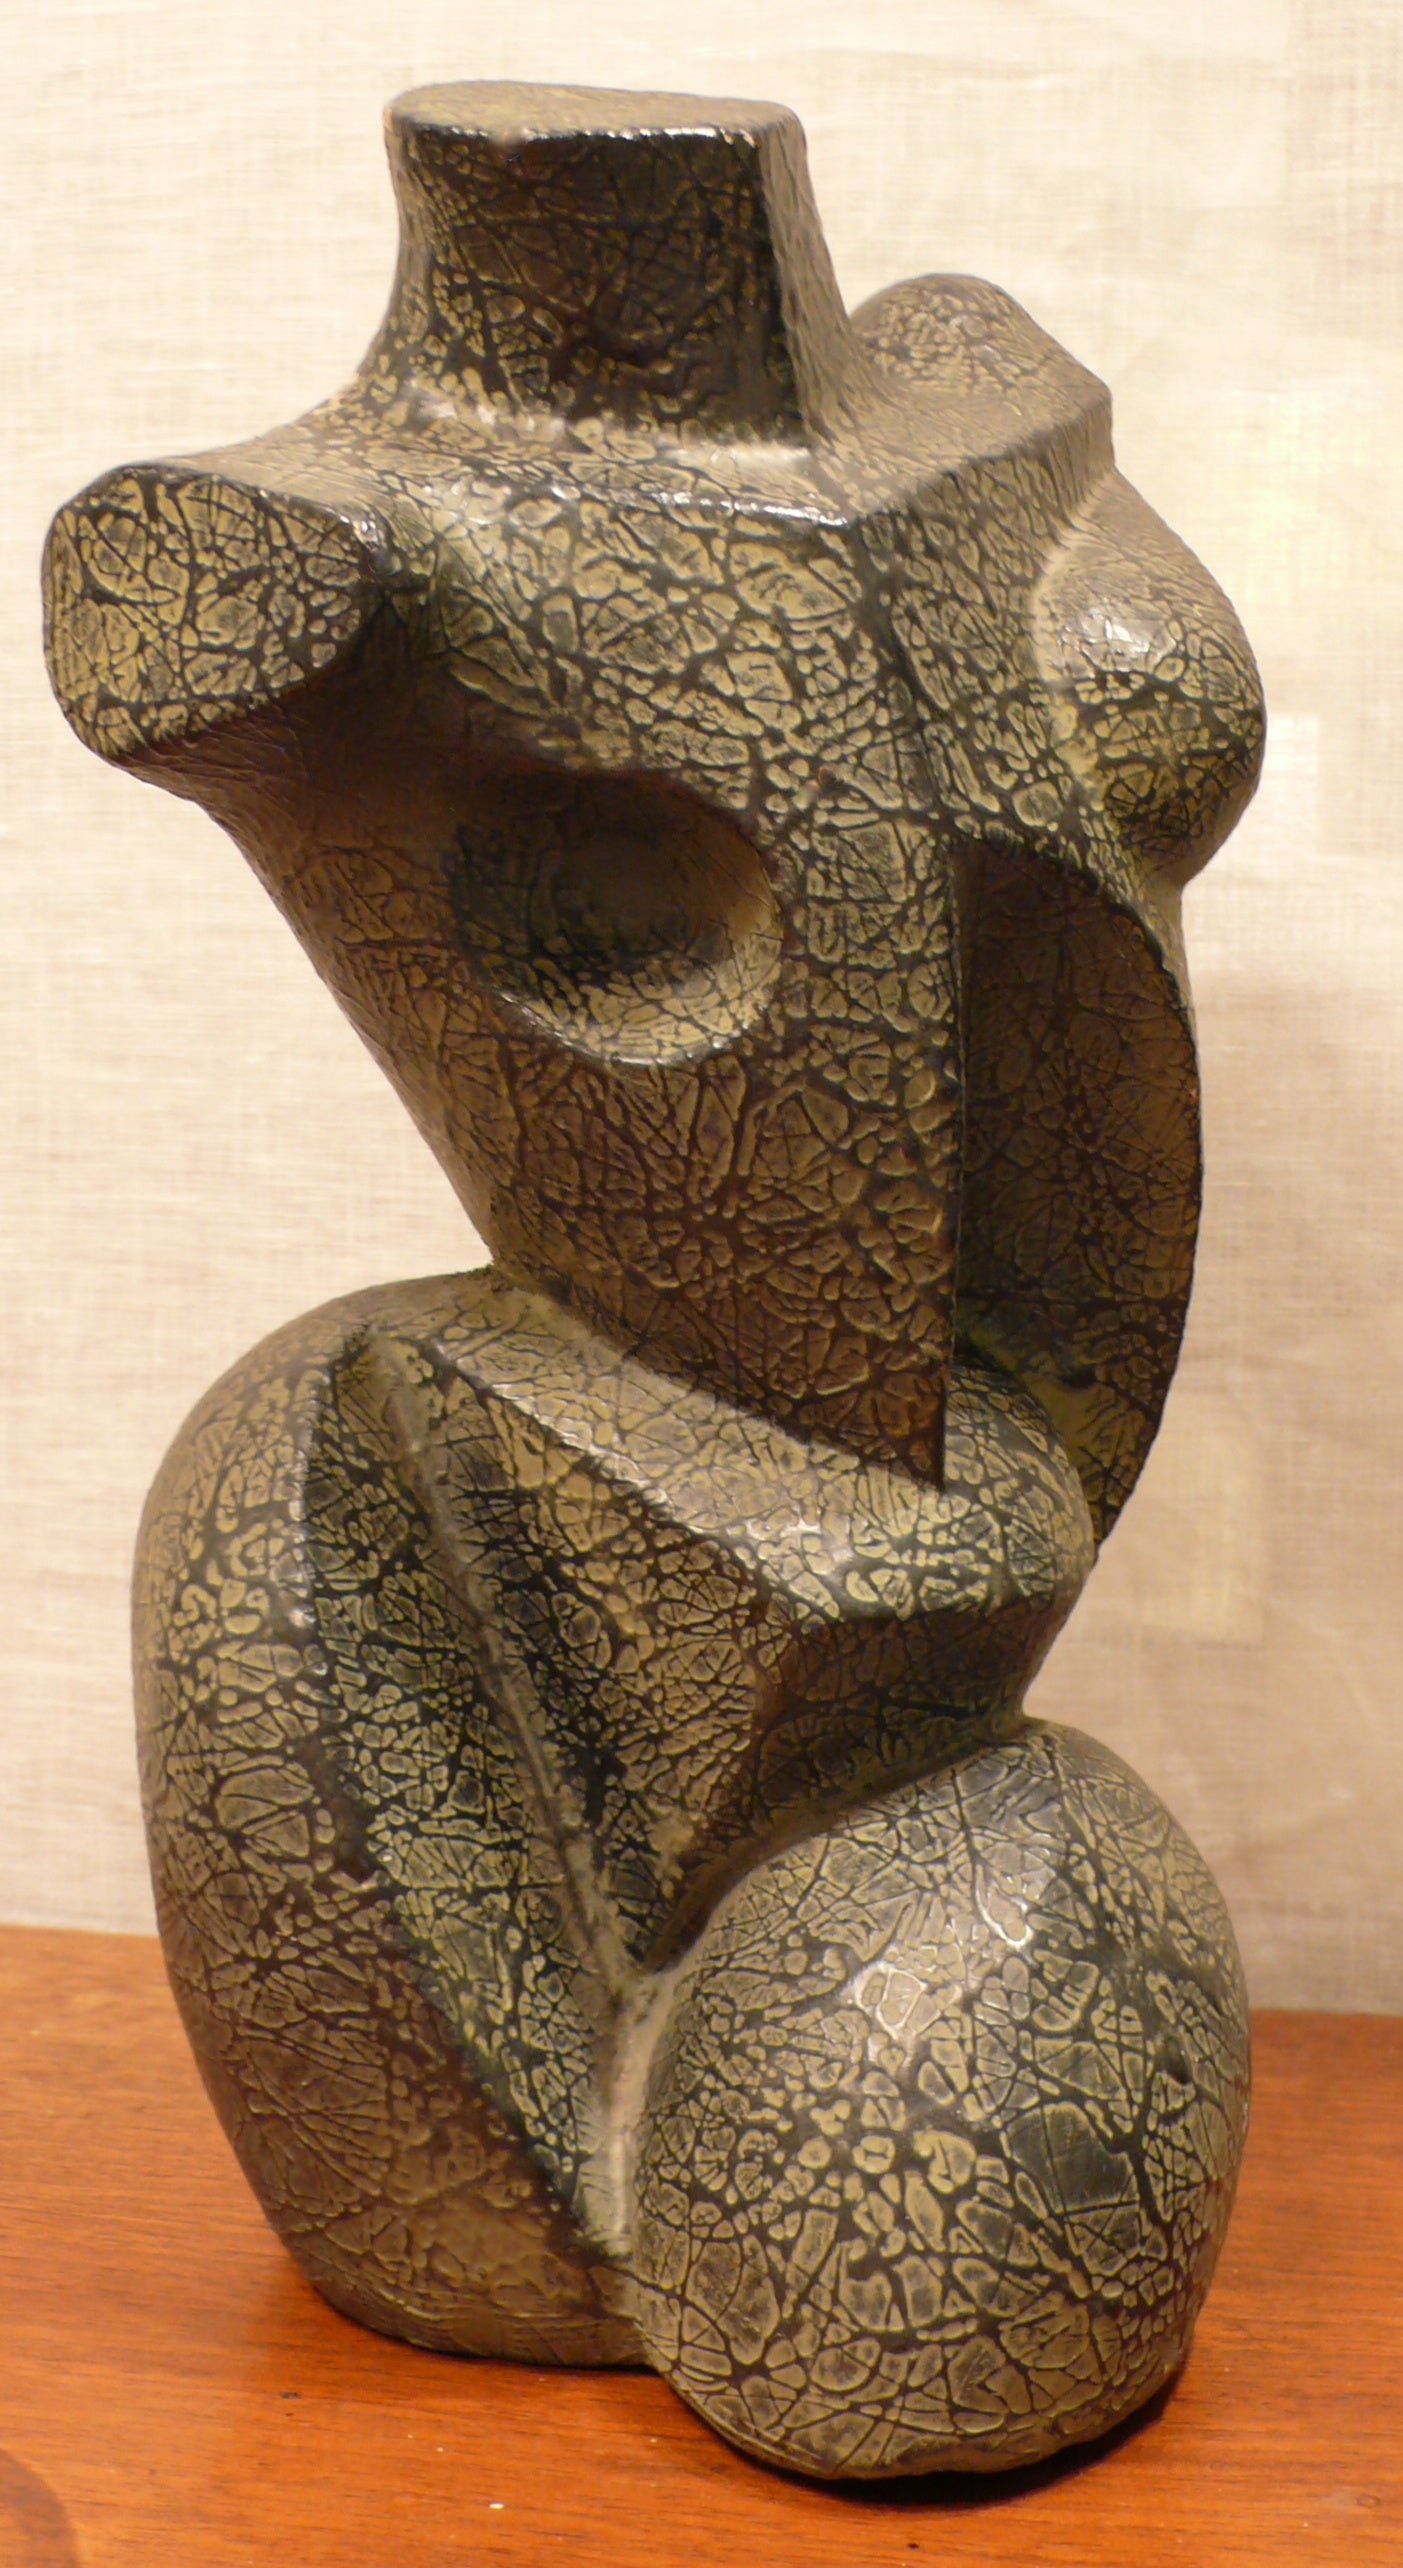 Cubist Sculpture by Peter Lipman-Wulf